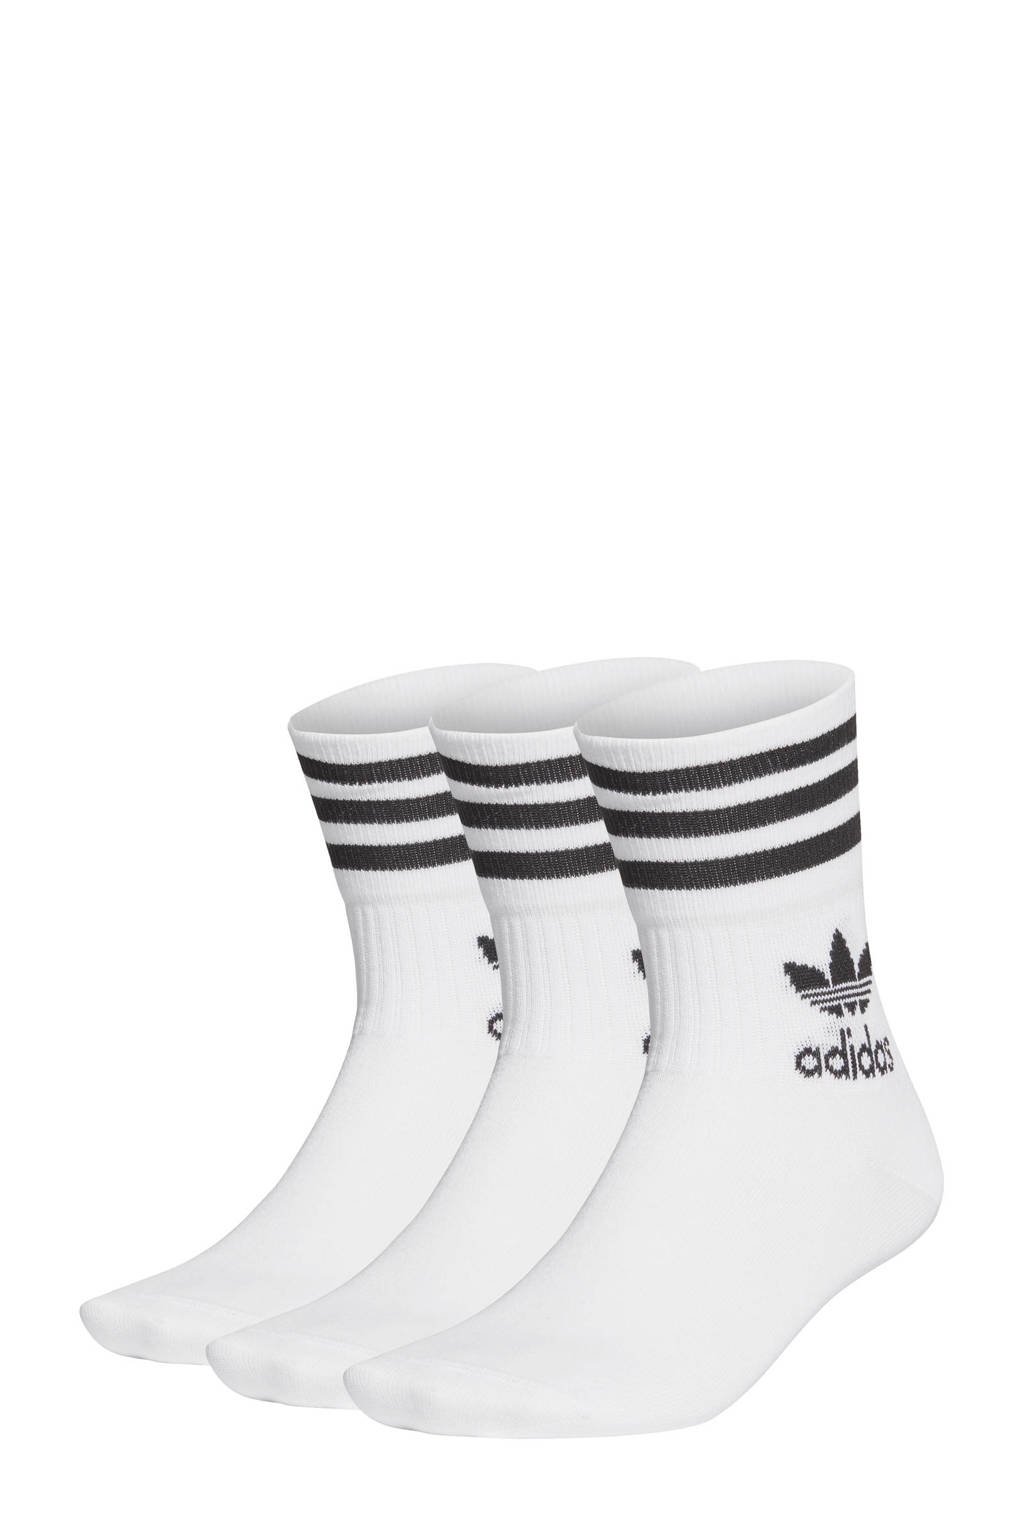 Arab Krachtcel Leerling adidas Originals sokken - set van 3 wit | wehkamp